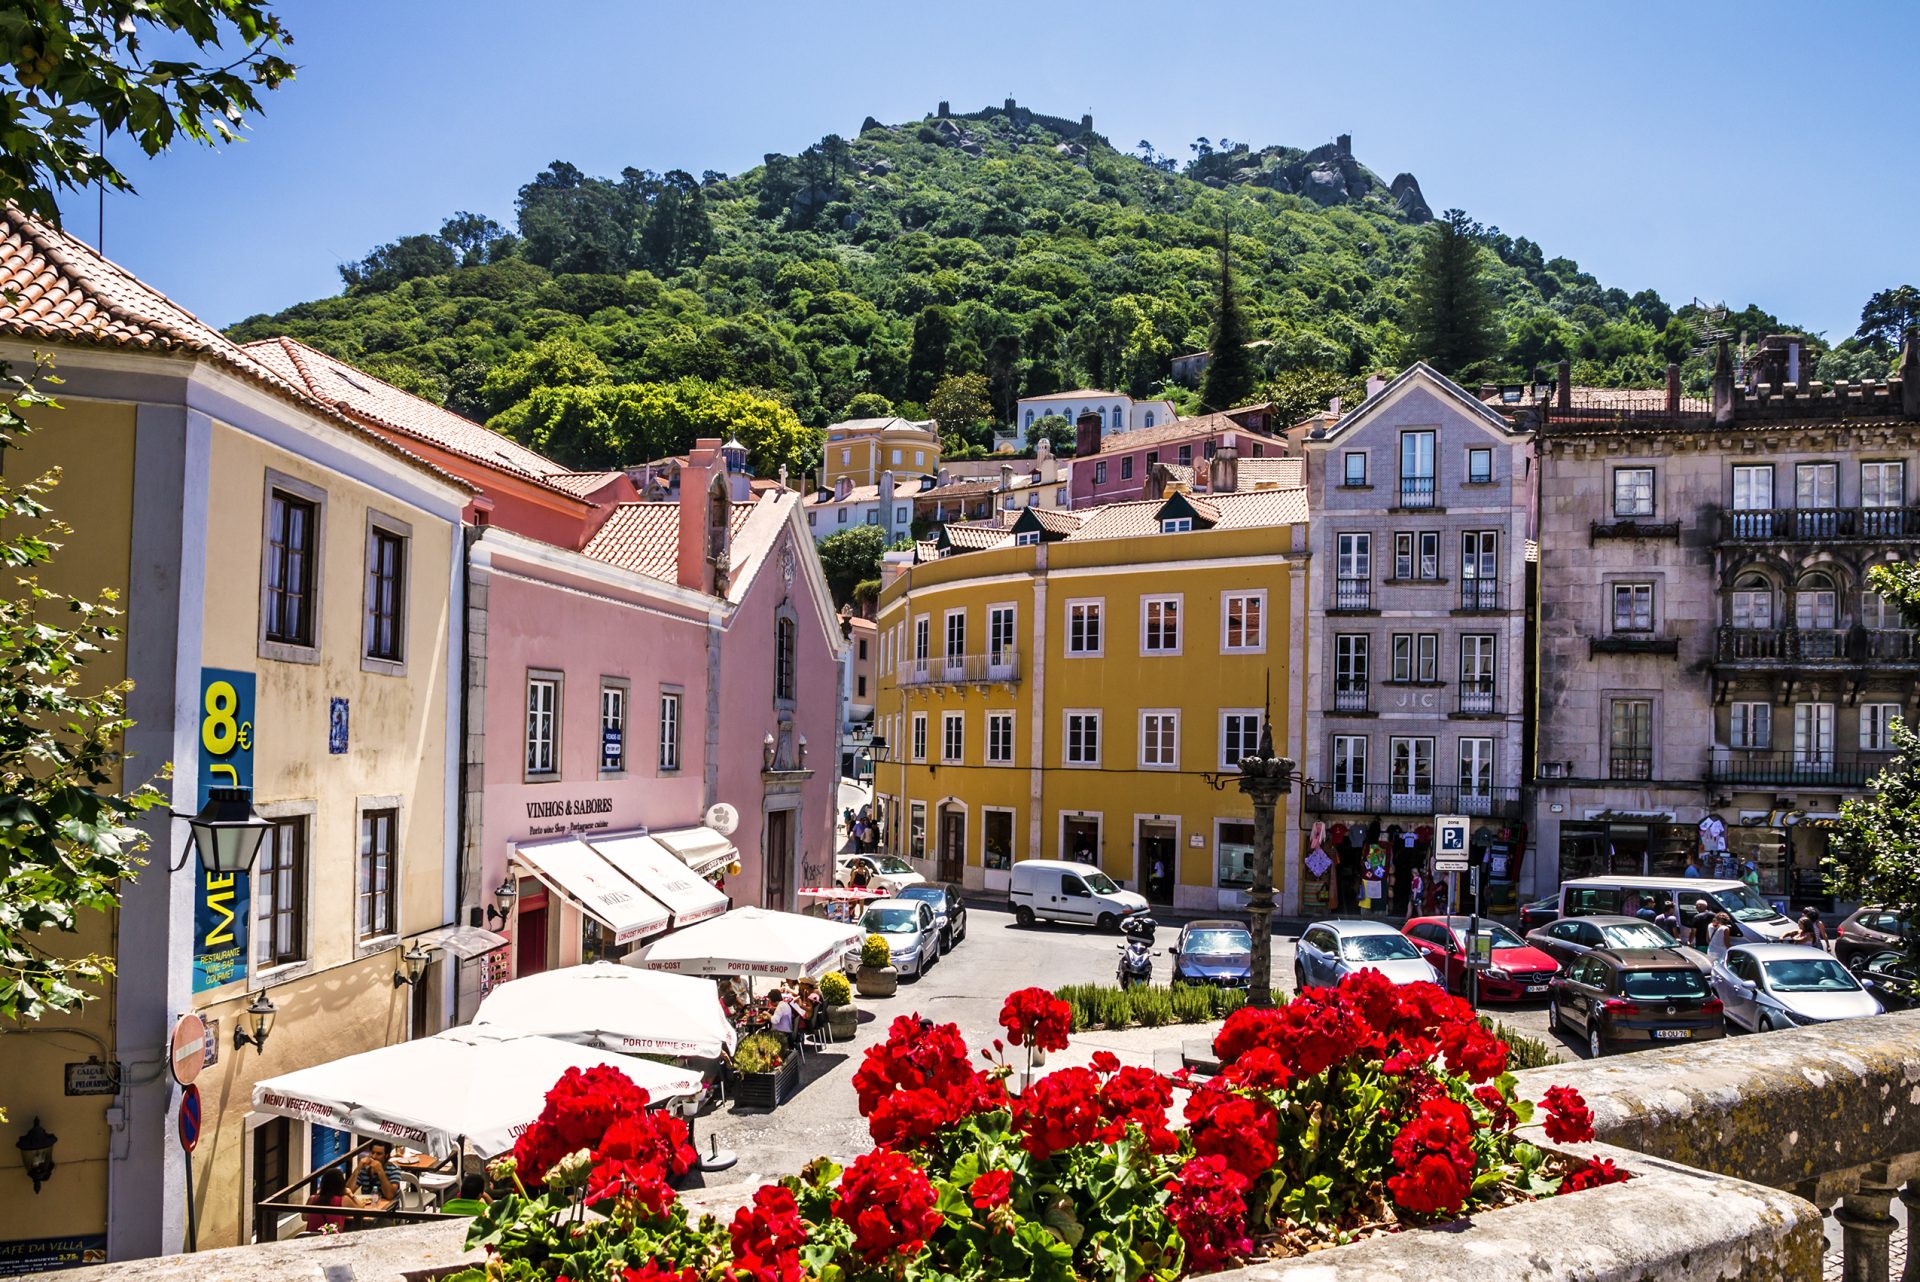 Este é o destino com os melhores hotéis de Portugal